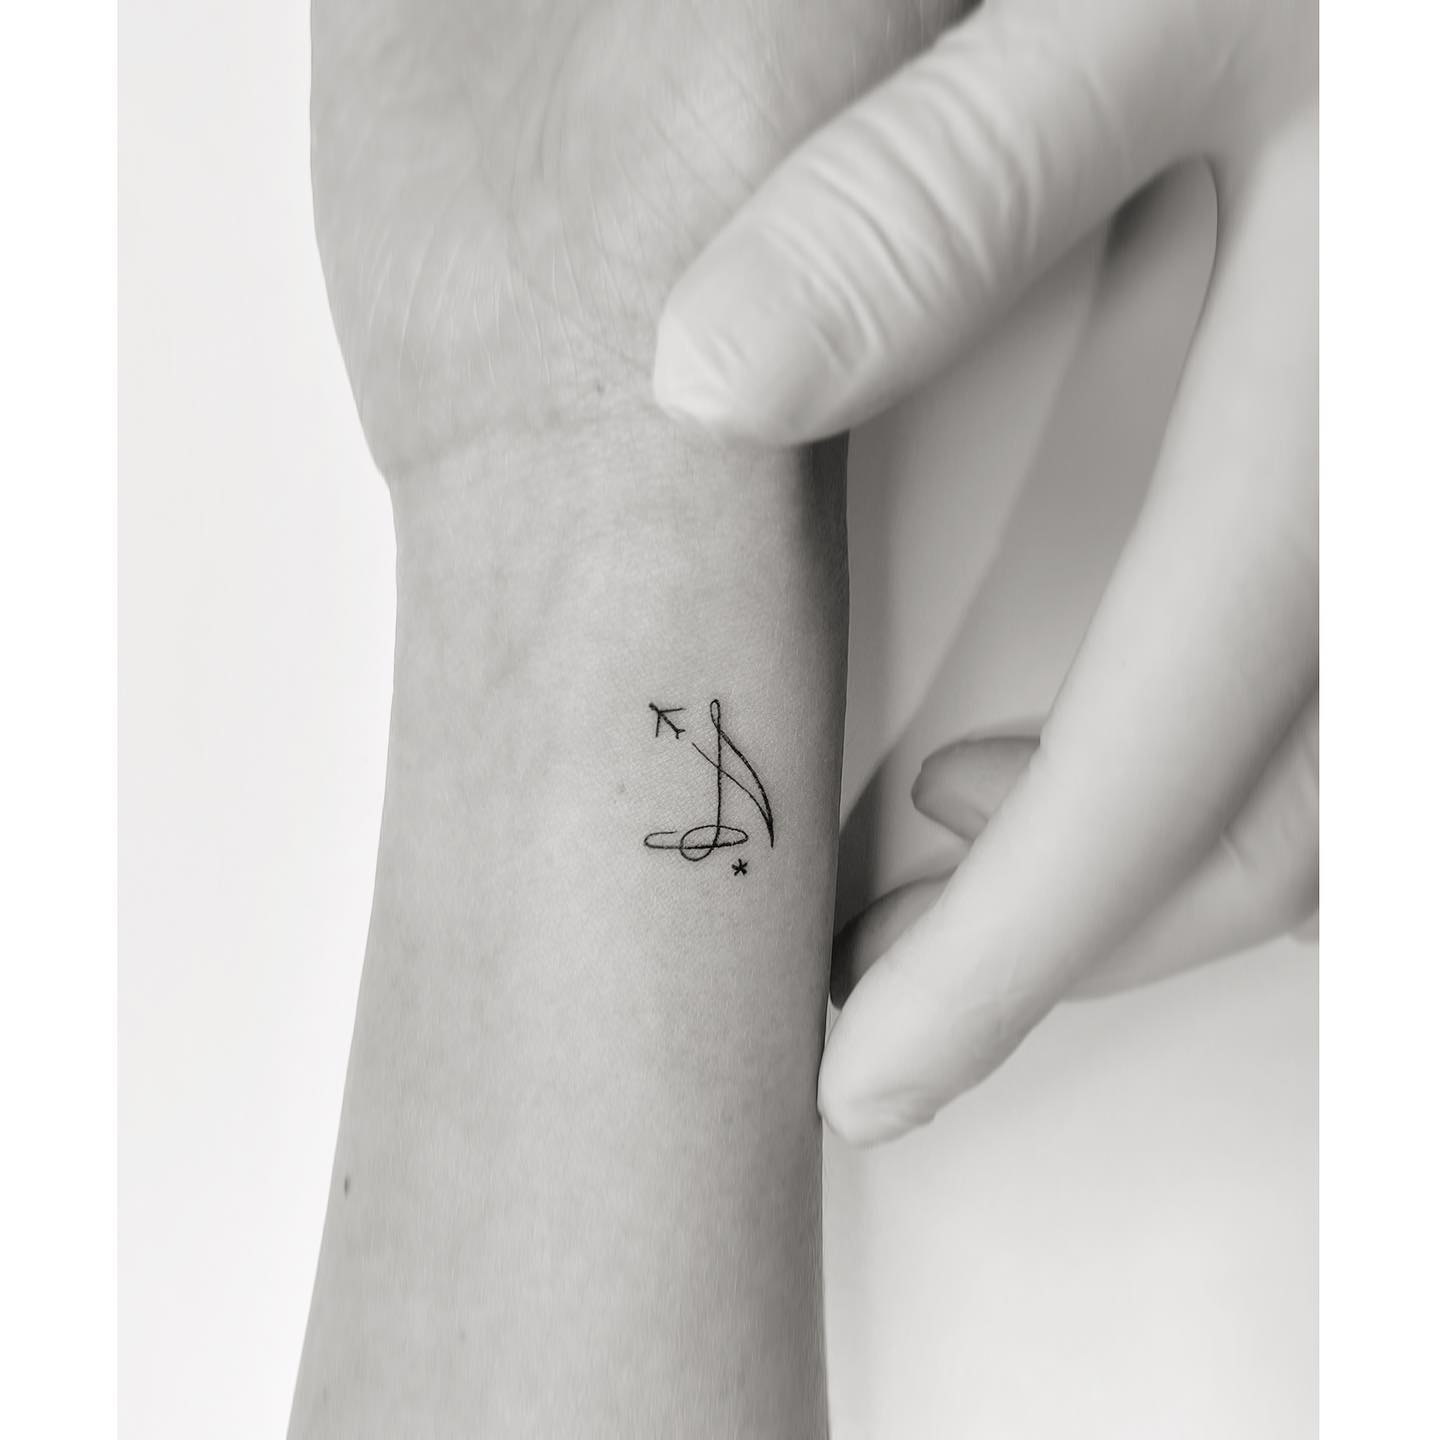 Idea de tatuaje de avión en el antebrazo pequeño